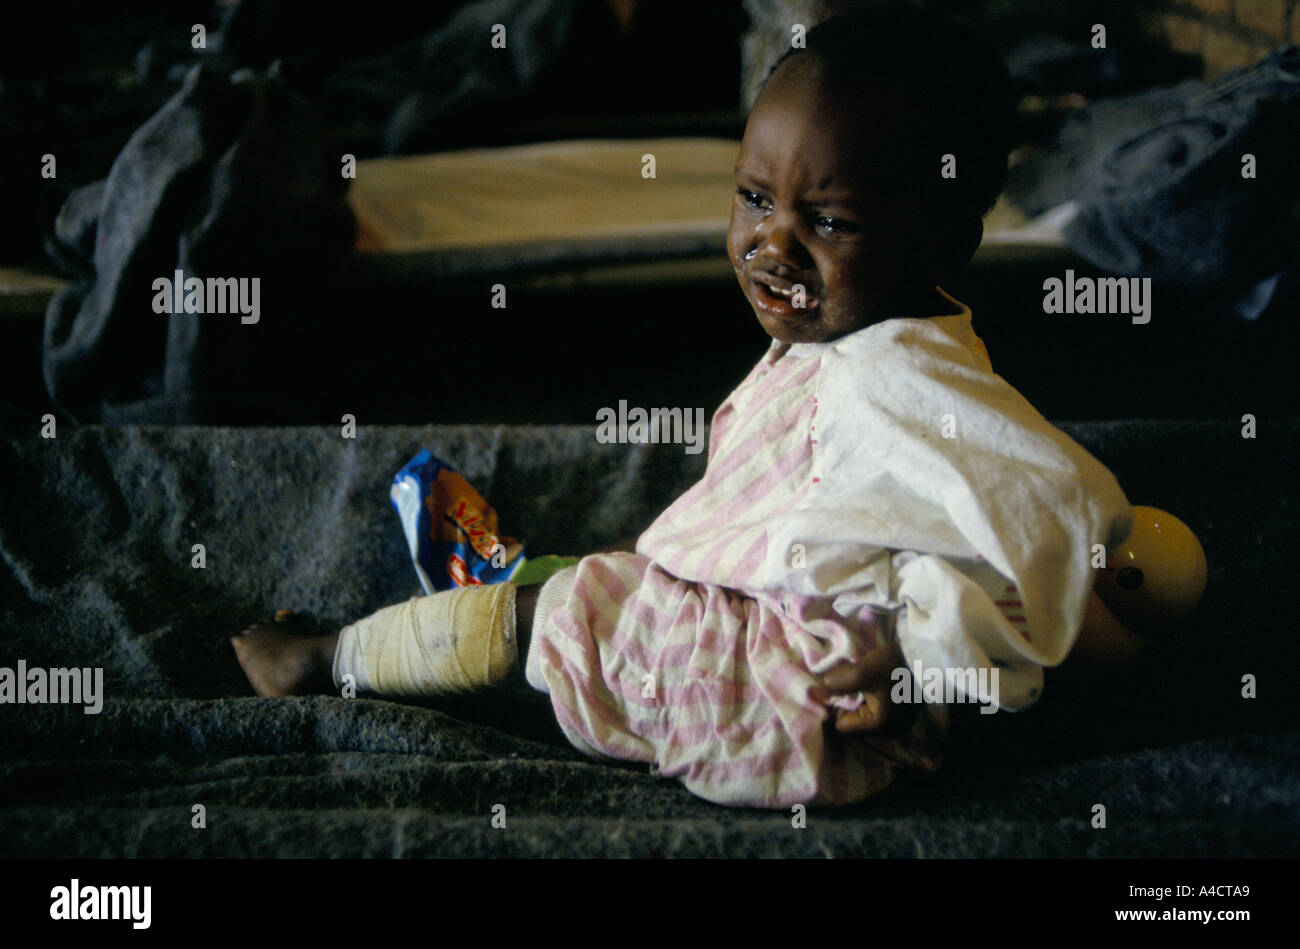 La guerre civile rwandaise - un an, fille, la seule survivante de sa famille qui ont tous été assassinés par des bandes de Hutus, dans l'hôpital de la Croix rouge internationale avril 1994 Banque D'Images